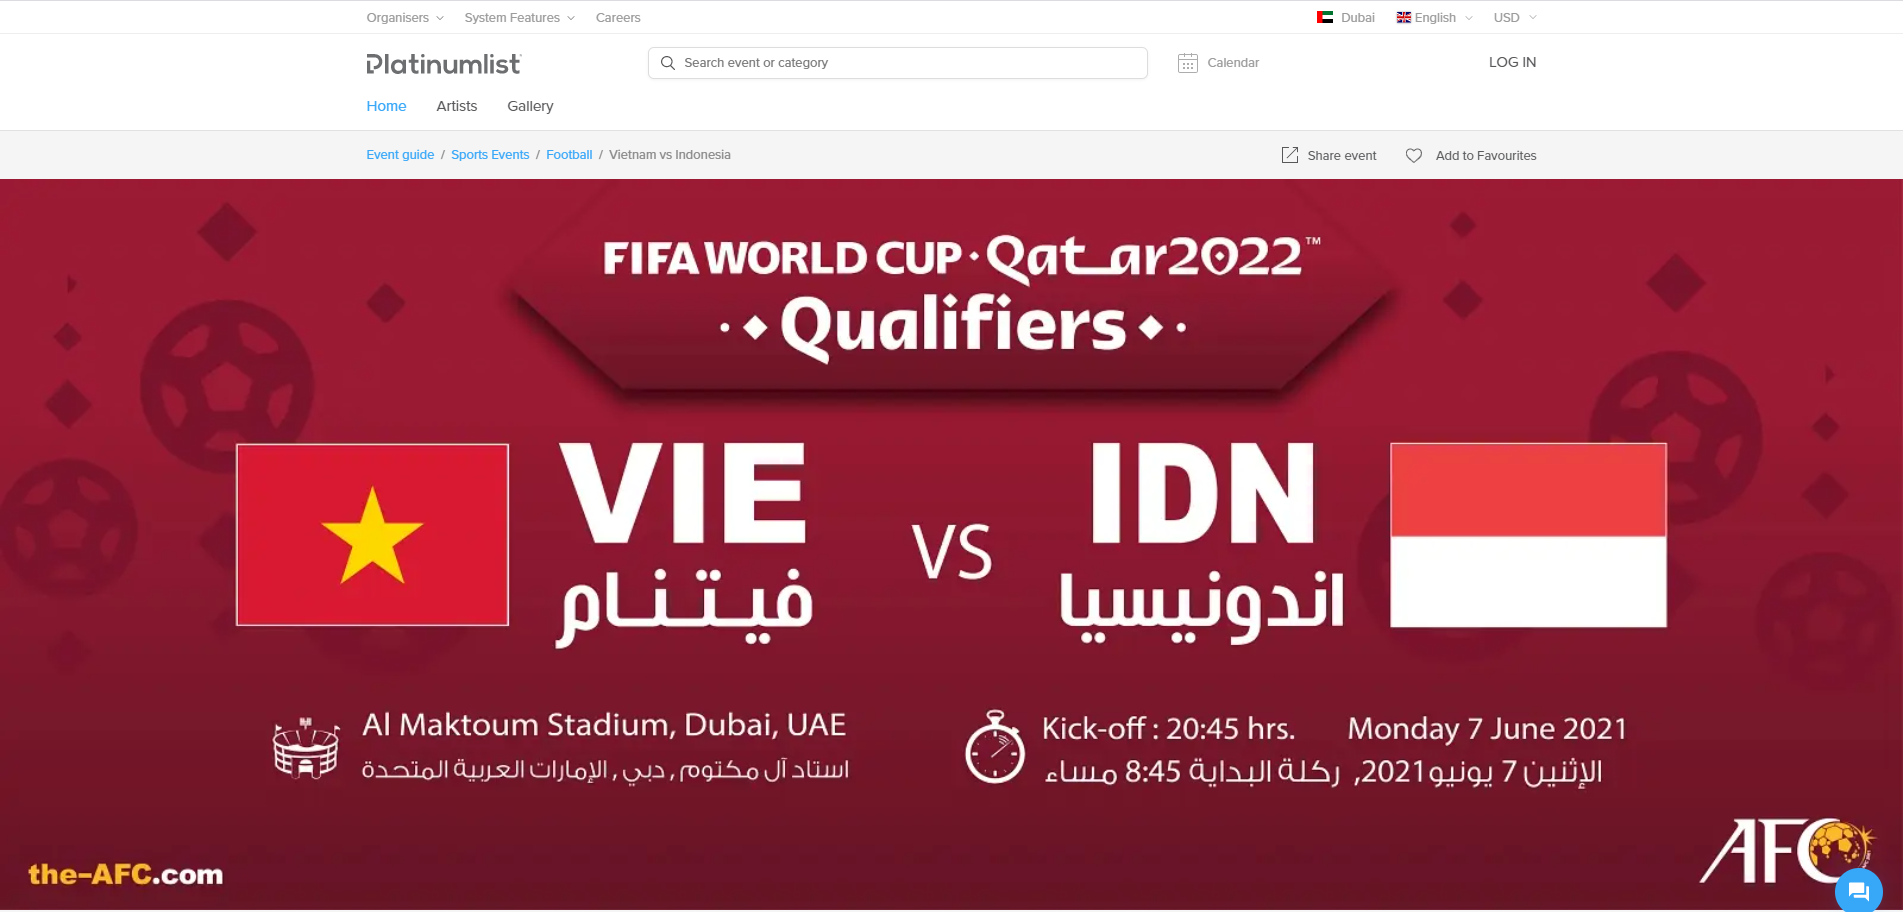 Trang đặt vé online theo dõi trận đấu giữa đội tuyển Việt Nam và Indonesia ở UAE.